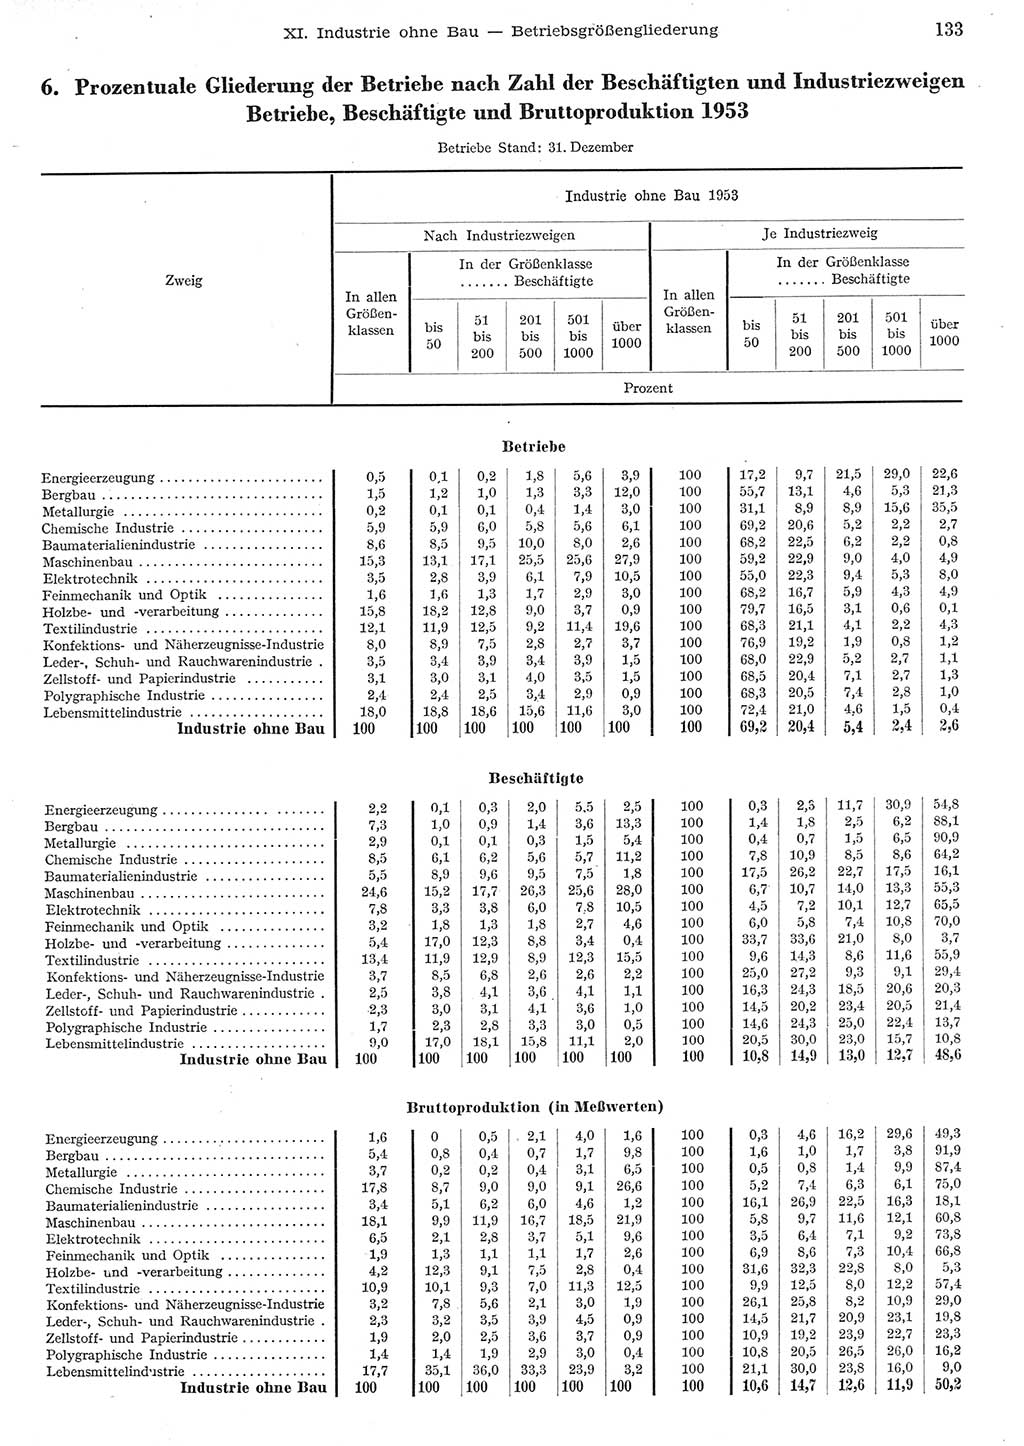 Statistisches Jahrbuch der Deutschen Demokratischen Republik (DDR) 1955, Seite 133 (Stat. Jb. DDR 1955, S. 133)